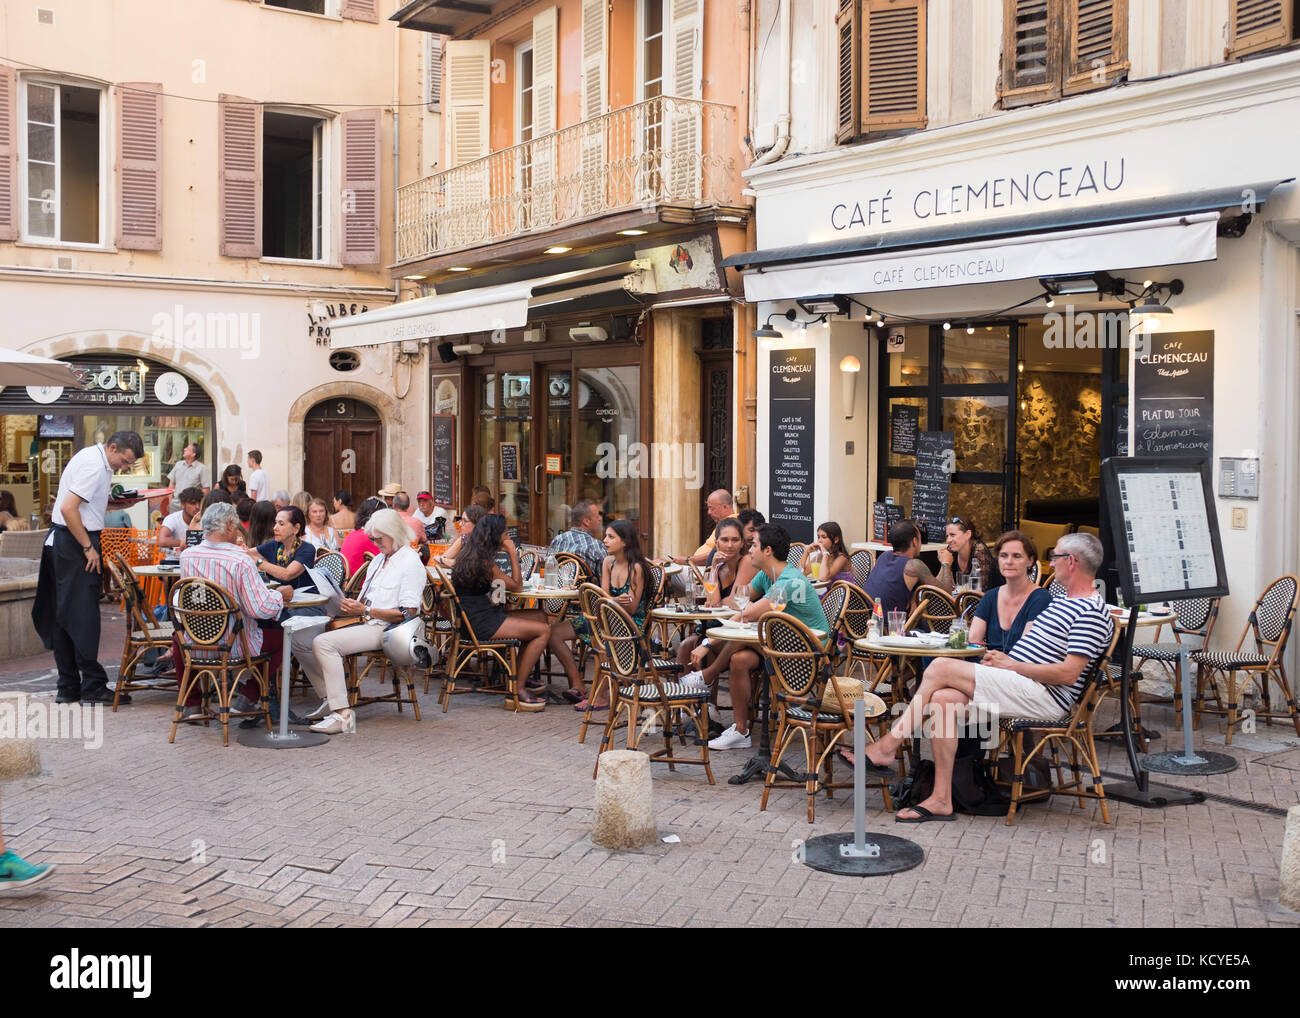 Die Menschen Essen im Cafe Clemenceau, Antibes, Cote d'Azur, Provence-Alpes-Cote d'Azur, Frankreich. Stockfoto